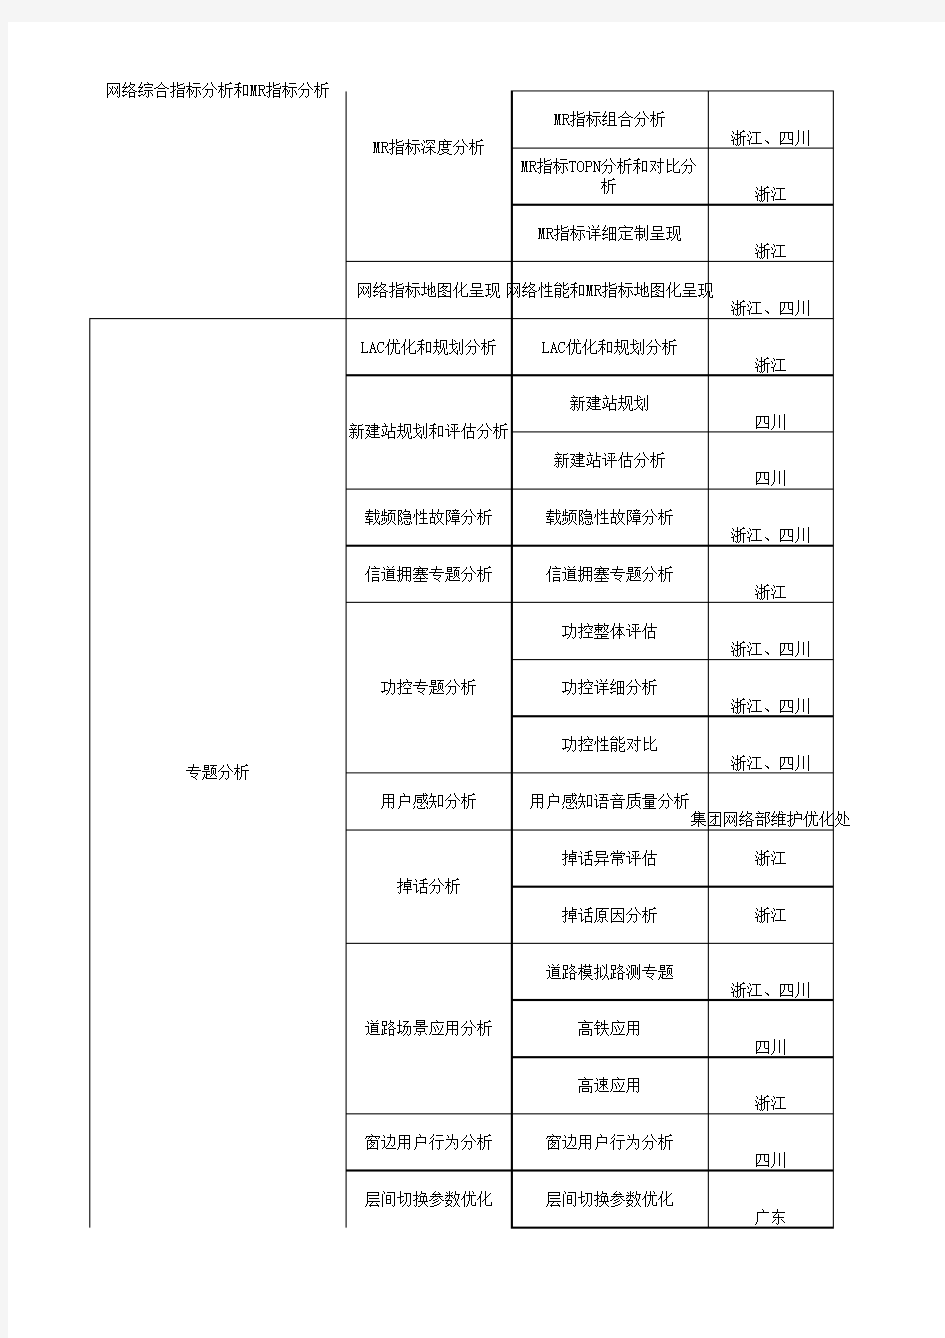 中国移动信令监测系统设备规范A+Abis应用功能列表